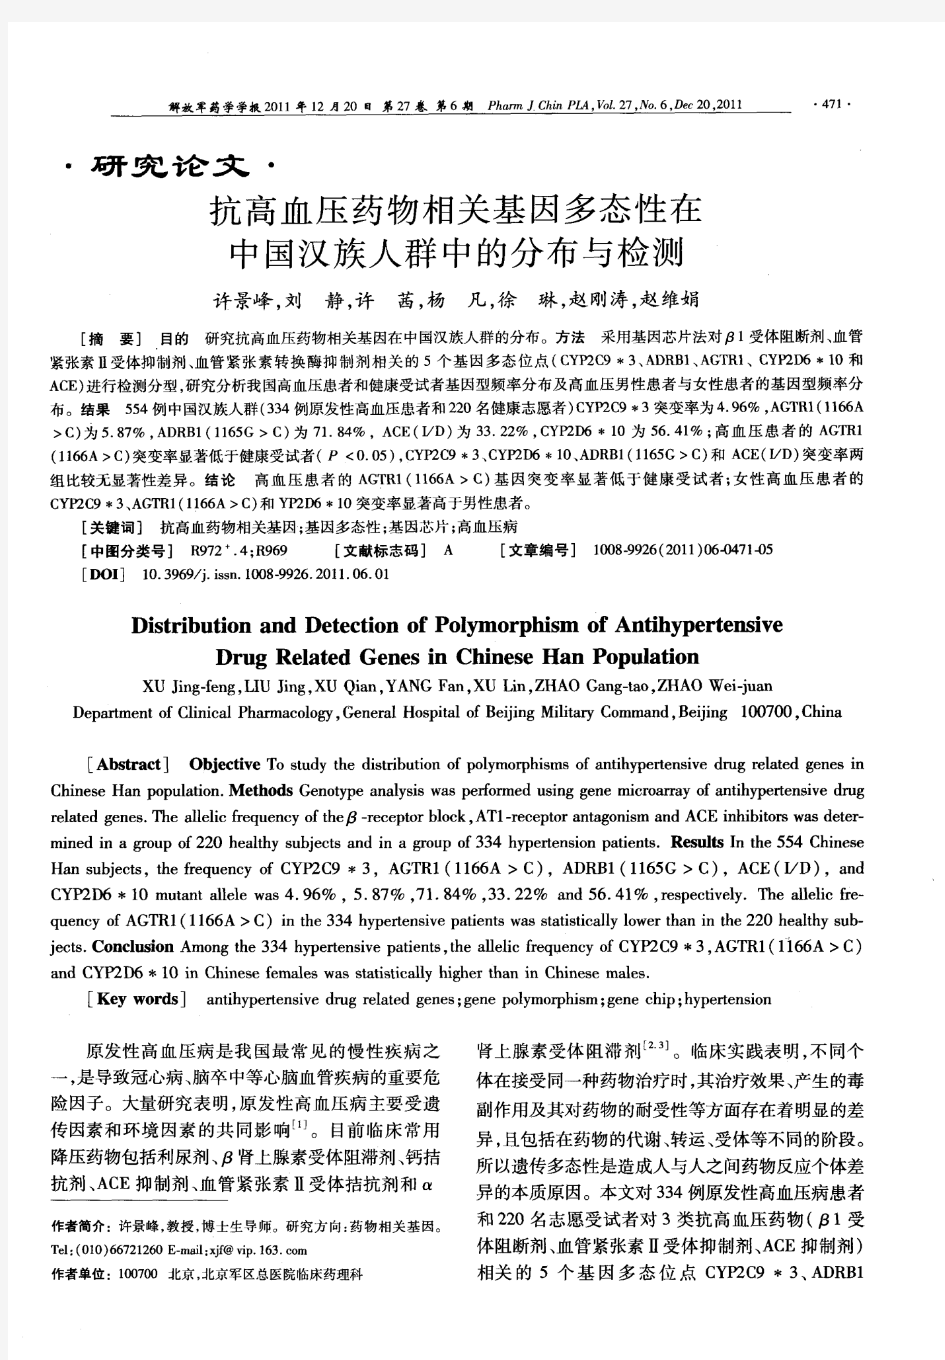 抗高血压药物相关基因多态性在中国汉族人群中的分布与检测